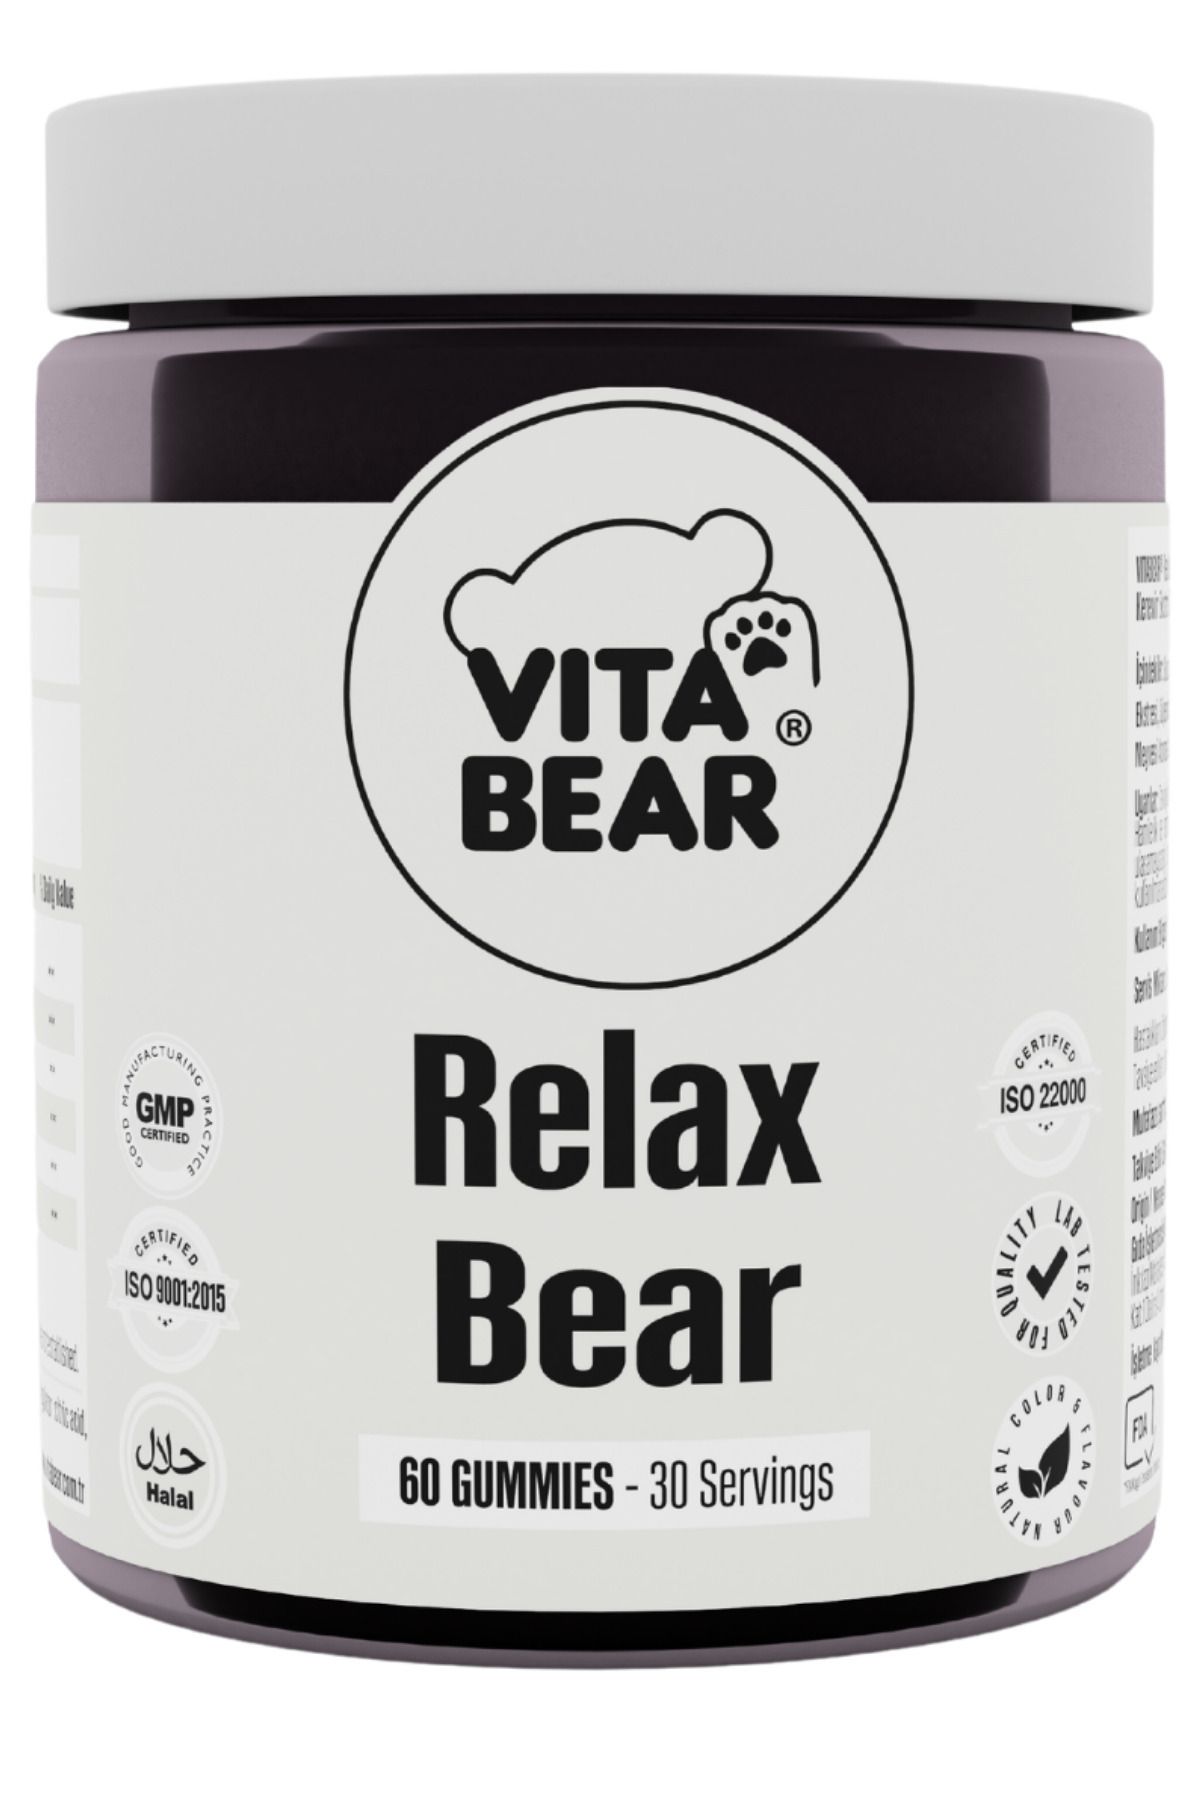 Vita Bear Relax Bear Stres, Kaygı, Endişe Ve Üzüntü Giderici Rahatlatıcı Gummy Vitamin